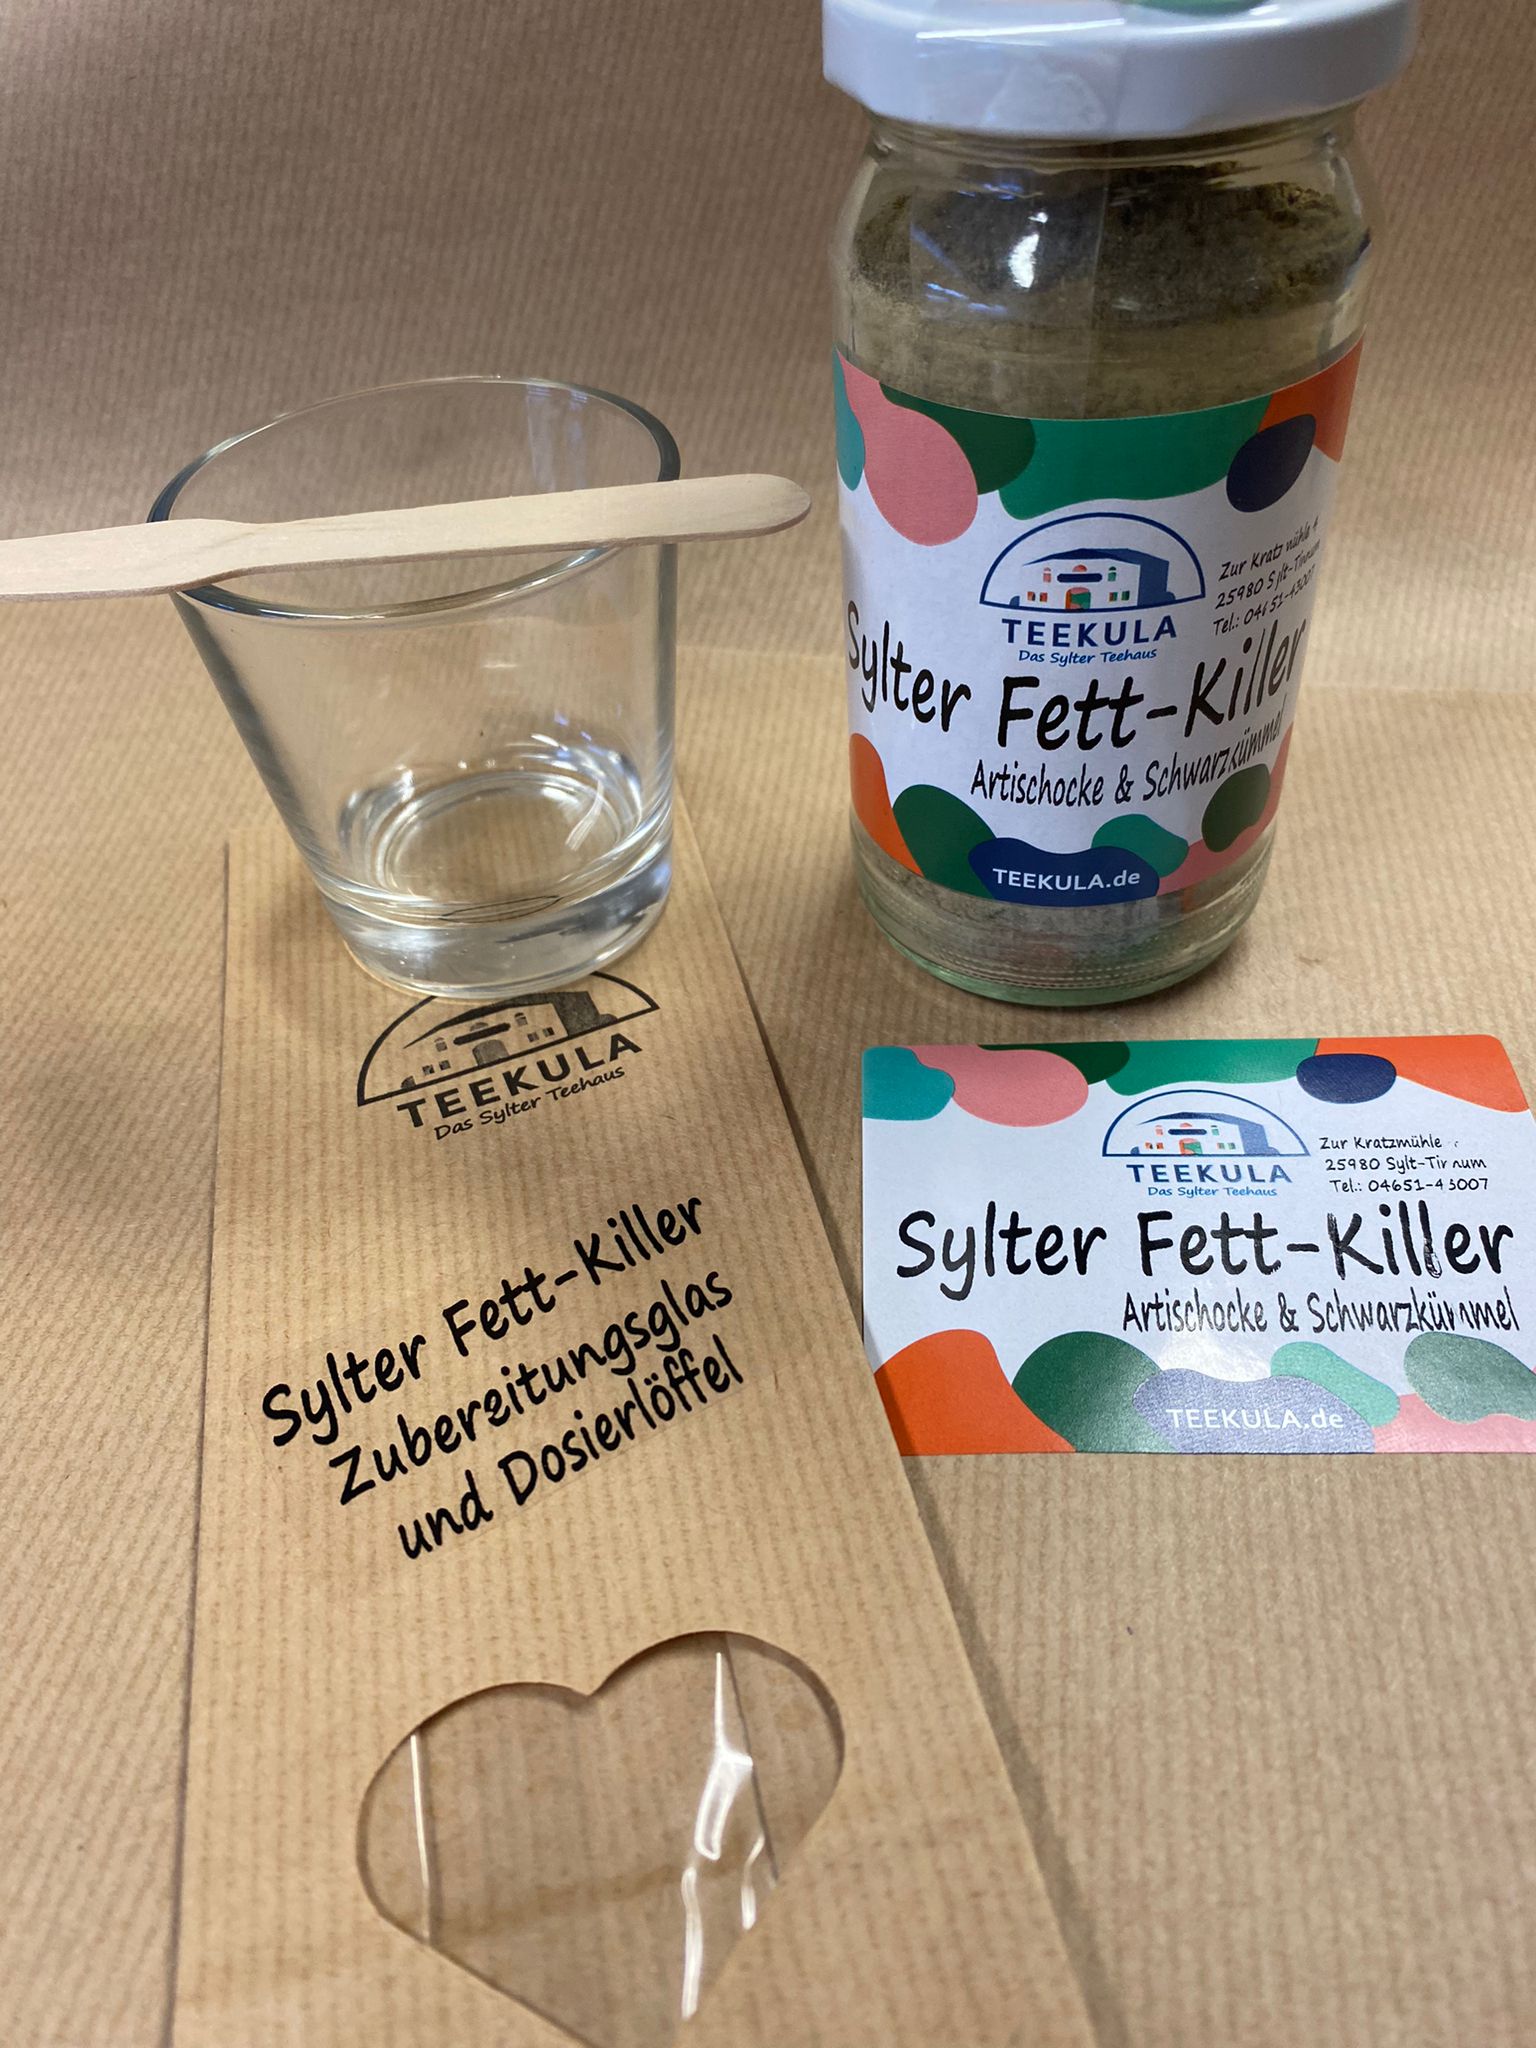 Sylter Fett-Killer